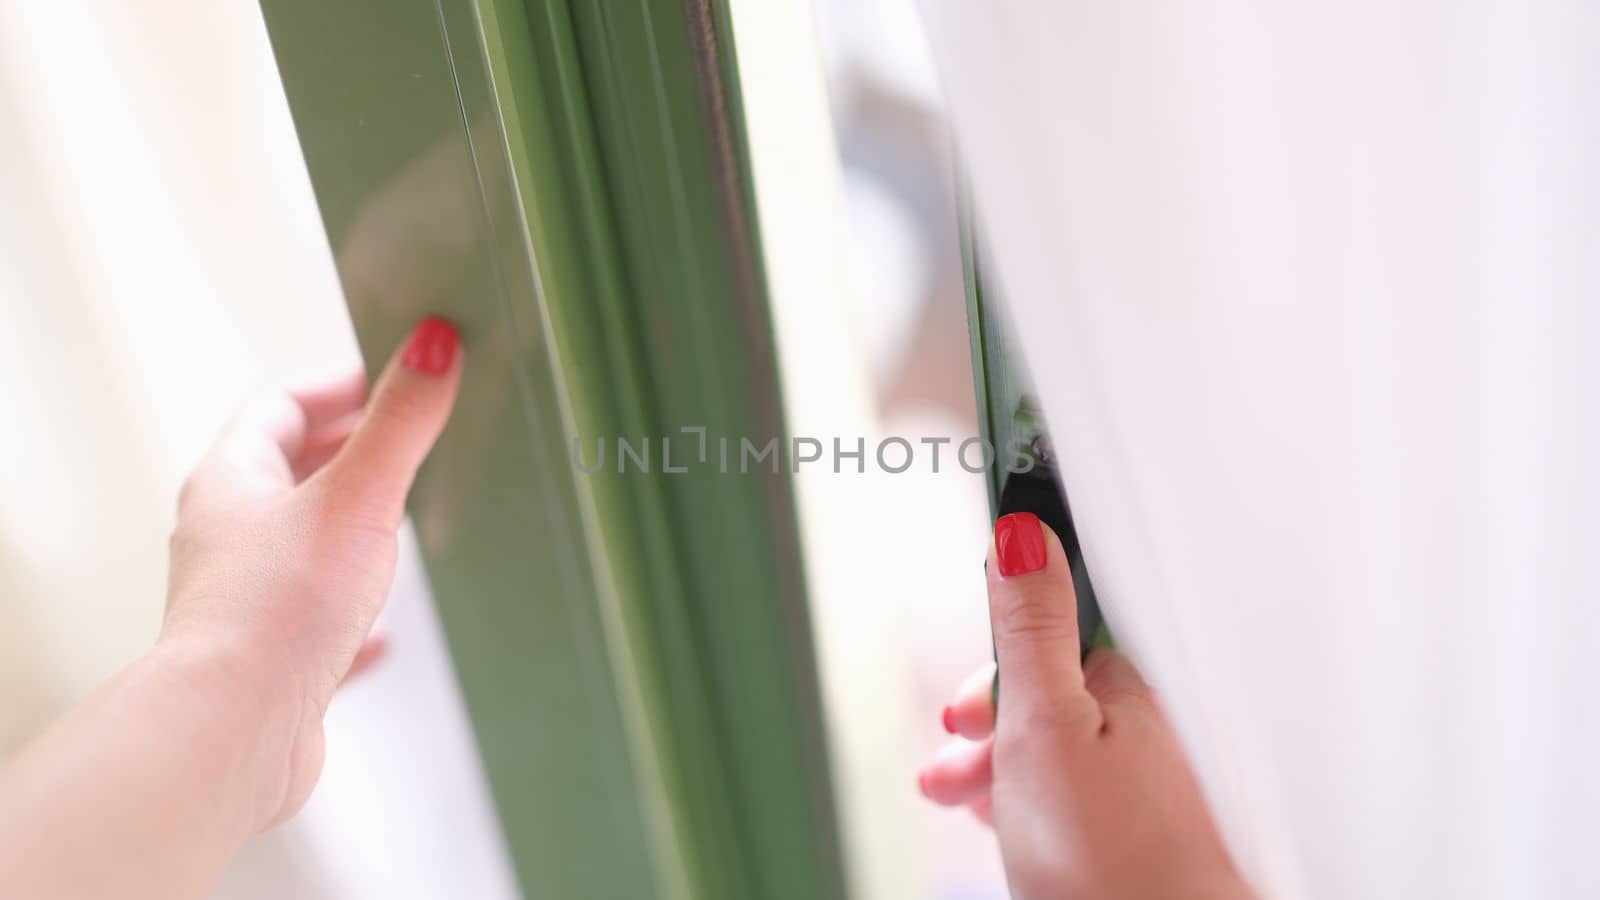 Woman tries to open door by holding window or door handle. Security and glass balcony doors